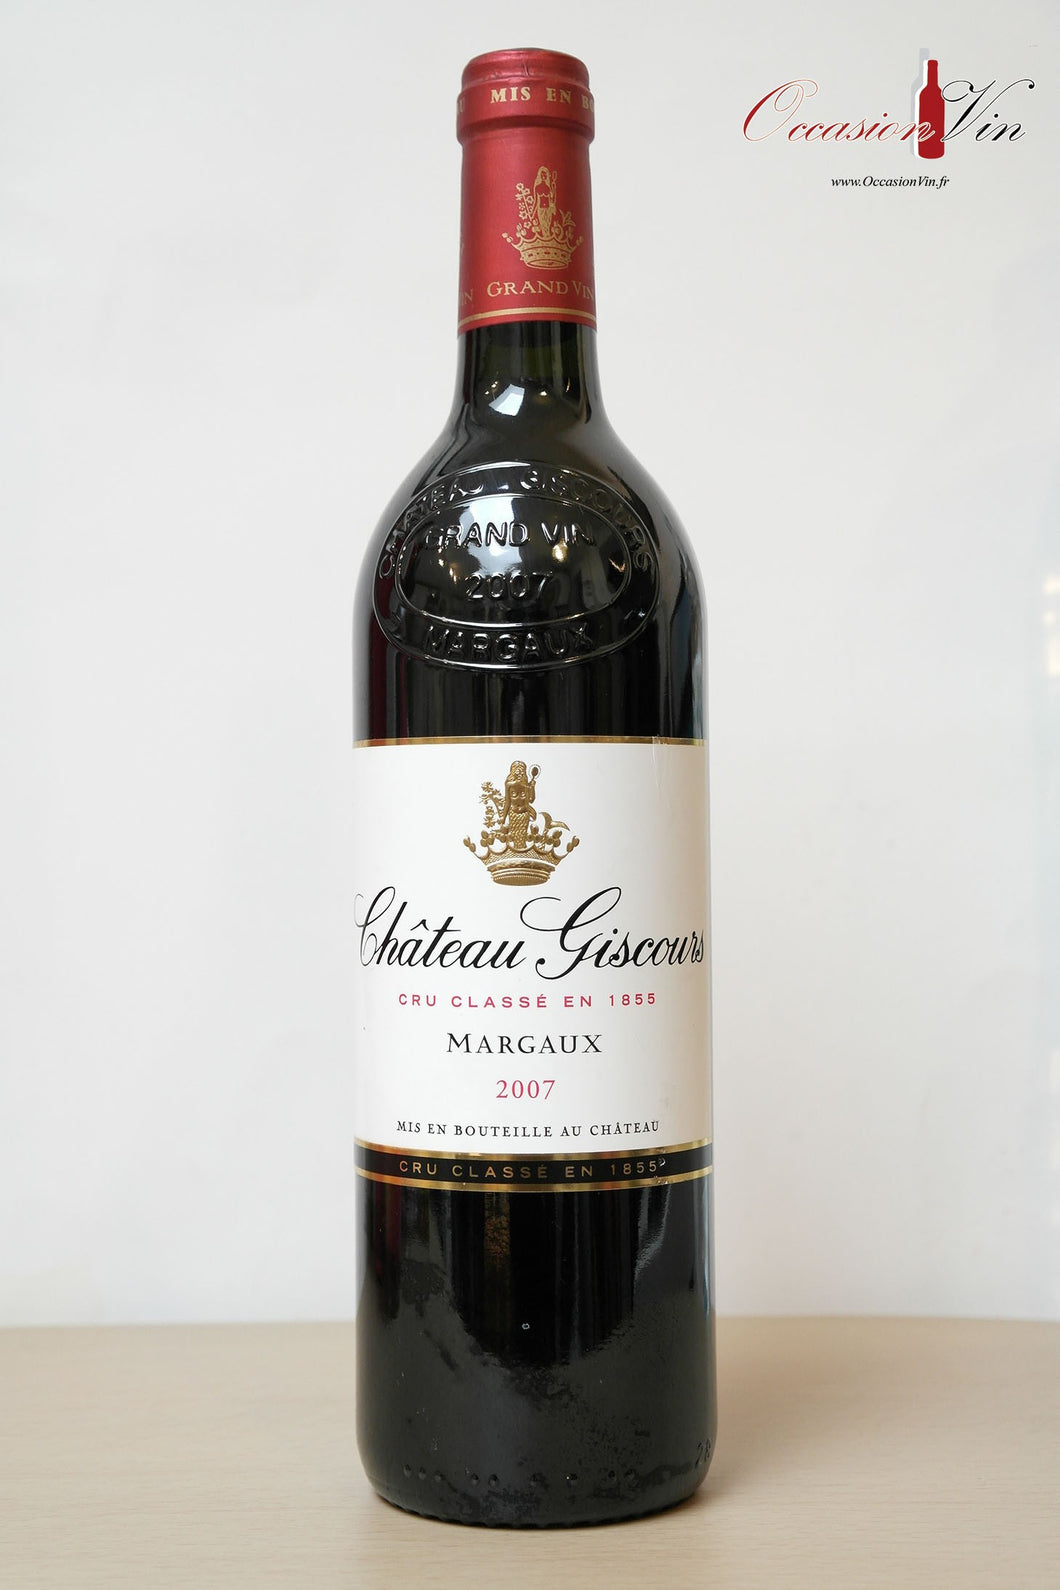 Château Giscours Vin 2007